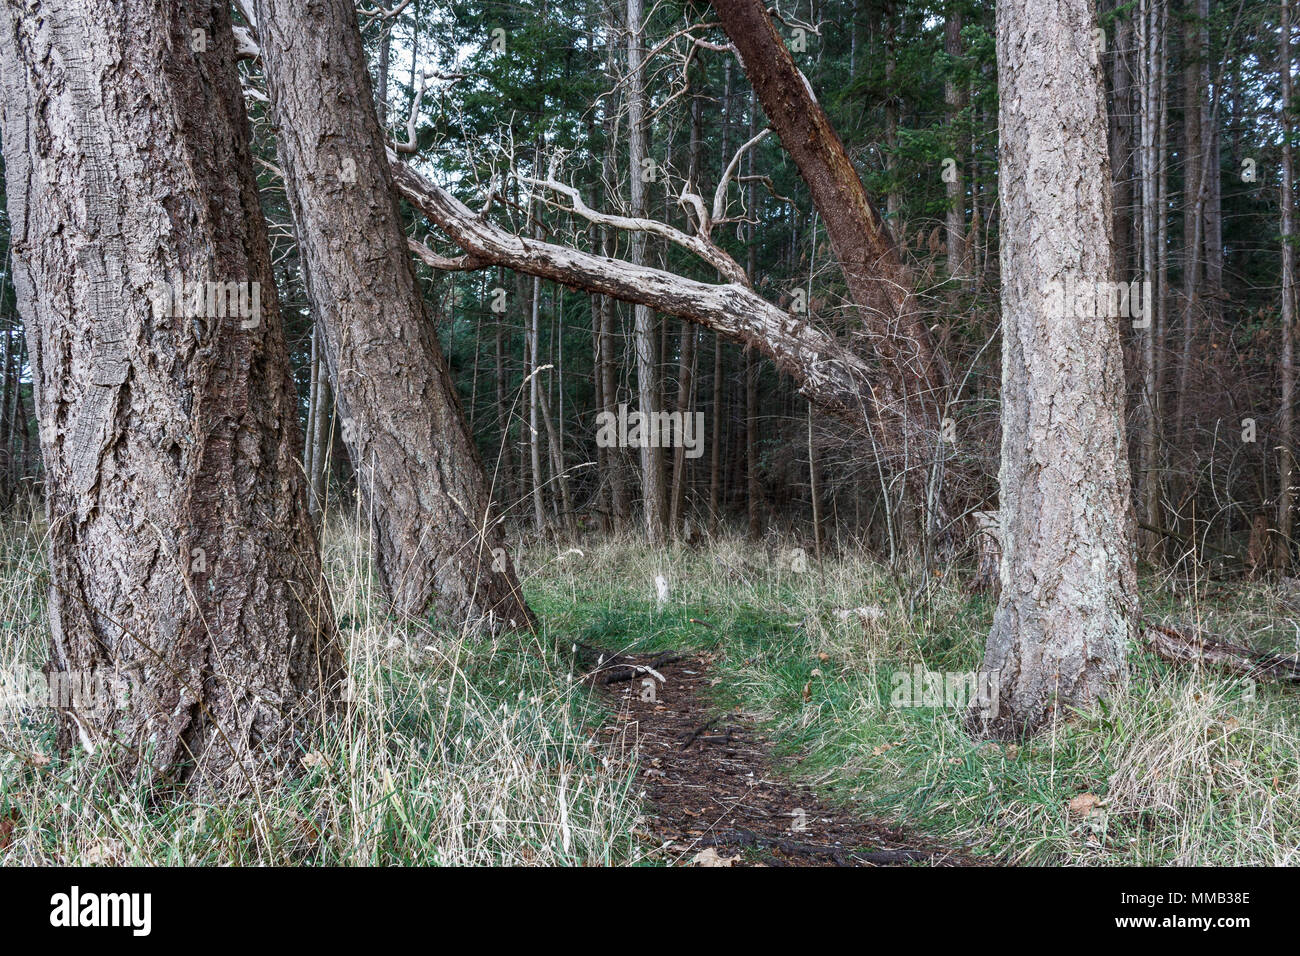 Douglas Fir stand a ambos lados de un camino en un parque forestal y un árbol de madroño (Pacific madrone) se inclina por el trazado (Columbia Británica). Foto de stock